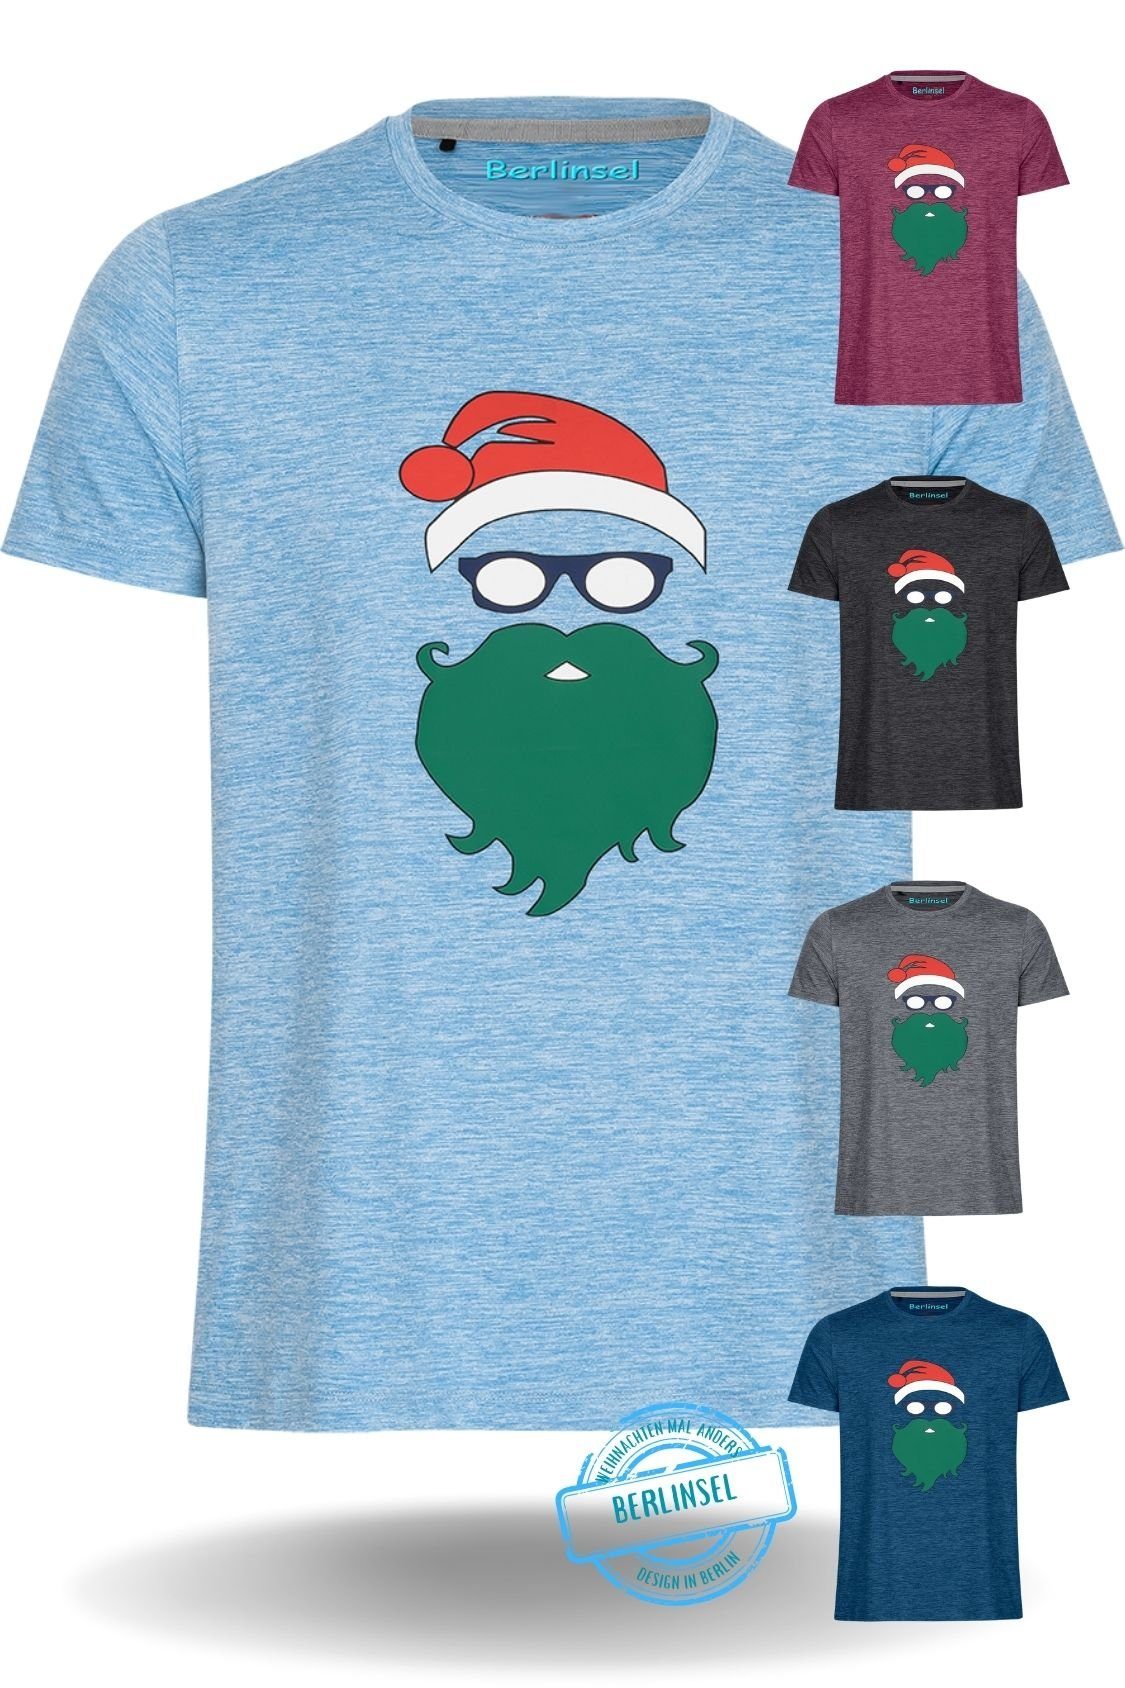 Berlinsel T-Shirt Printshirt Weihnachtsshirt Männer Weihnachtsoutfit Herren Weihnachtsfeier, Weihnachtsgeschenk, Weihnachtsfoto hellblau